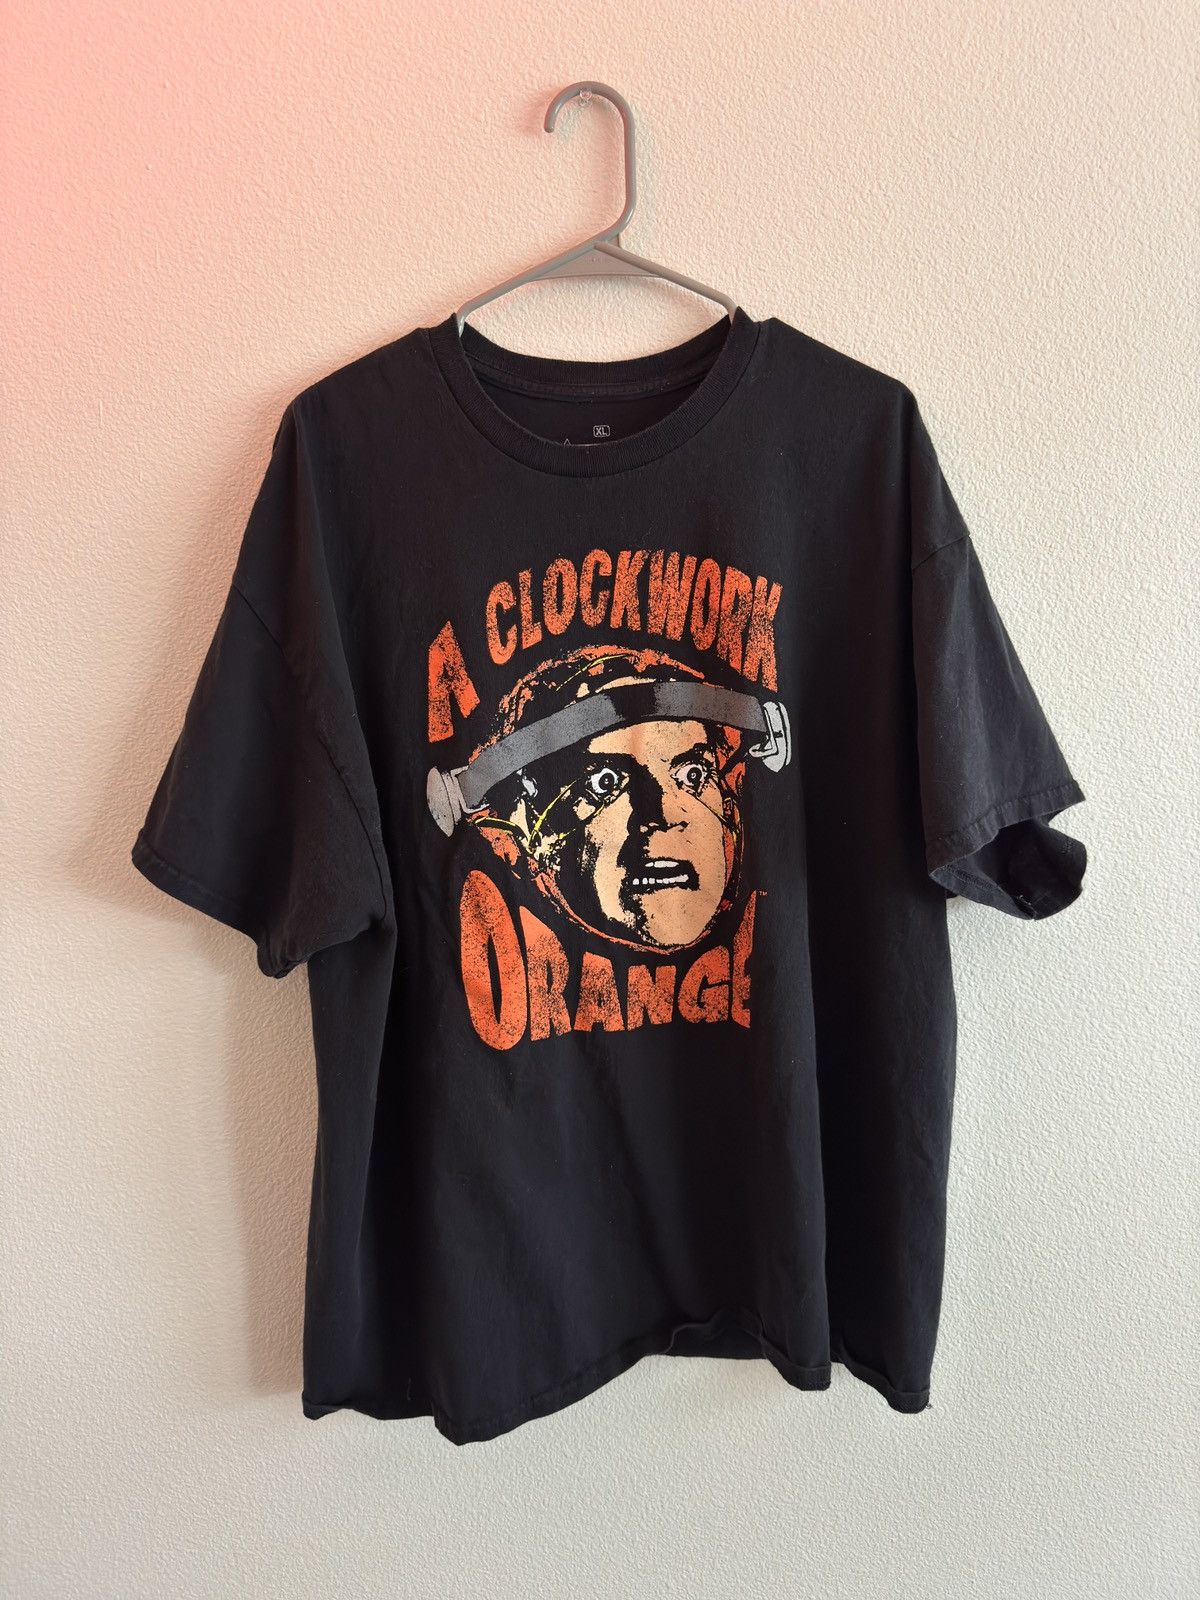 Vintage Clockwork Orange T Shirt | Grailed